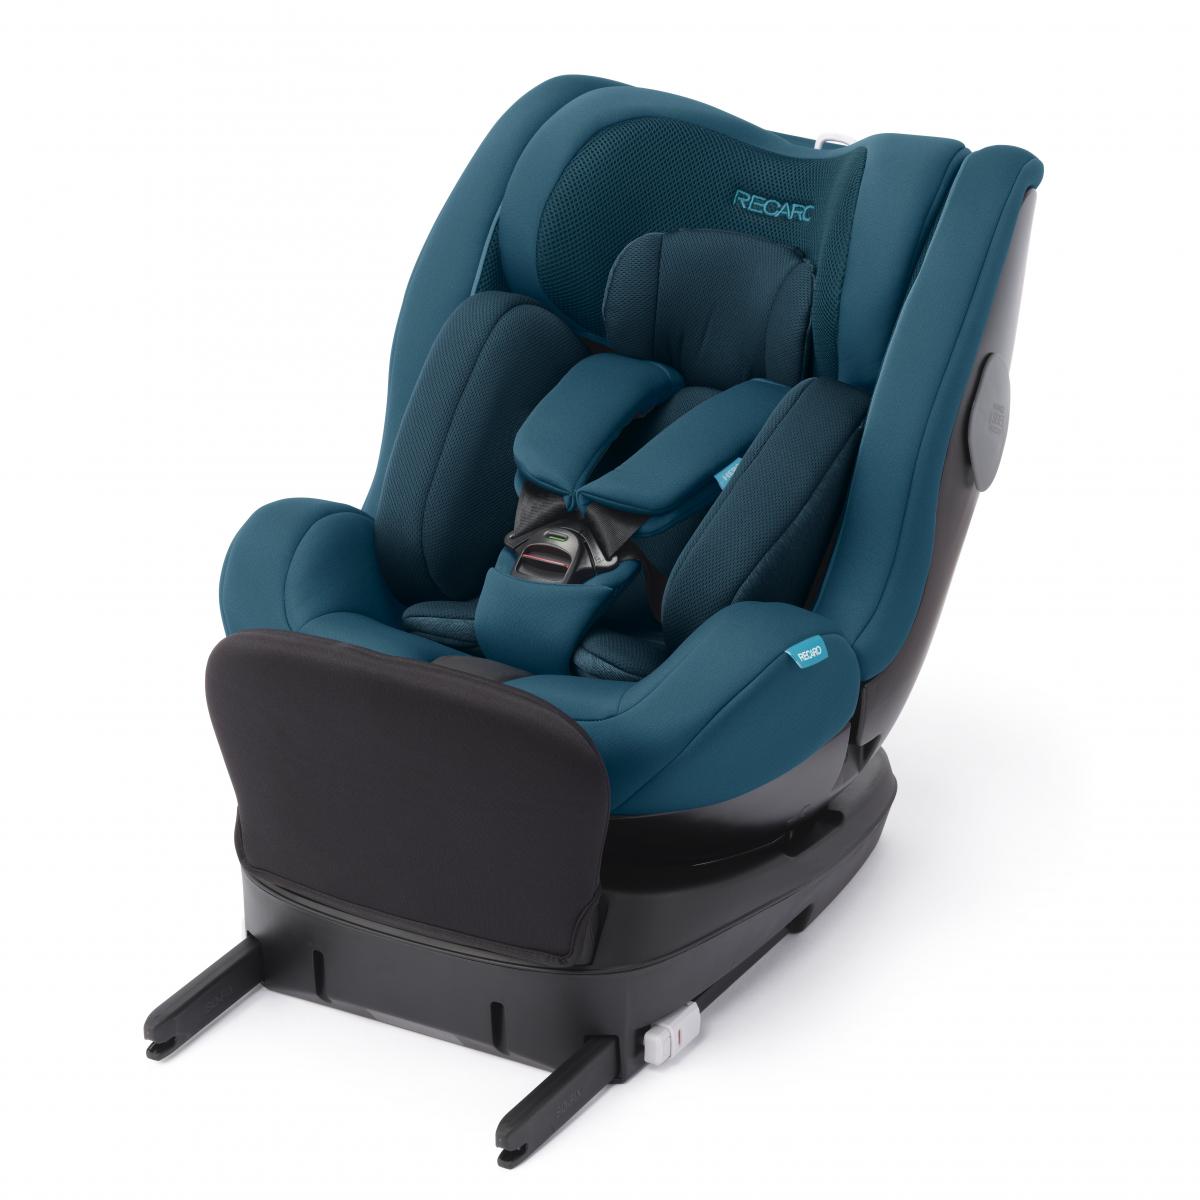 Salia 125, la silla de auto experta en seguridad que evoluciona junto al niño